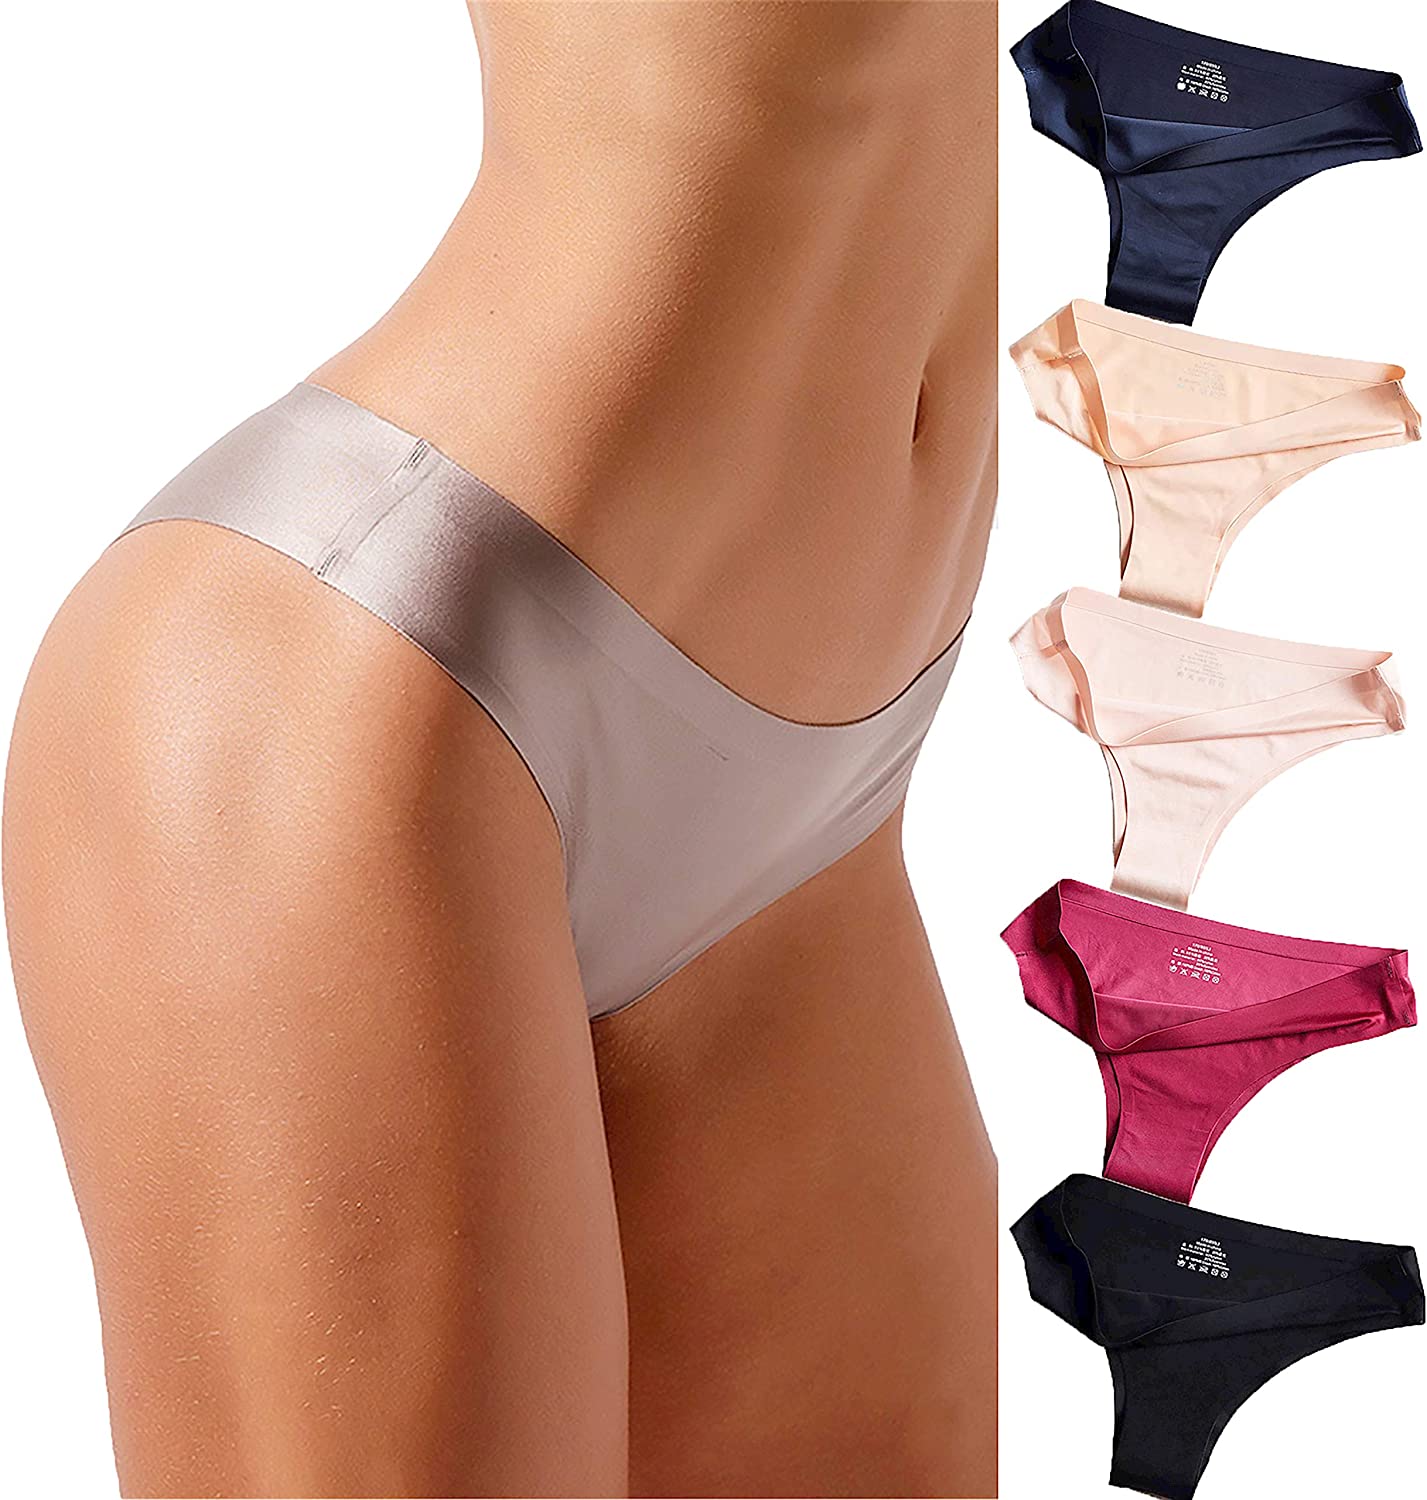 Buy Verdusa Women's 4pack Frill Trim Satin Underwear Briefs Panty